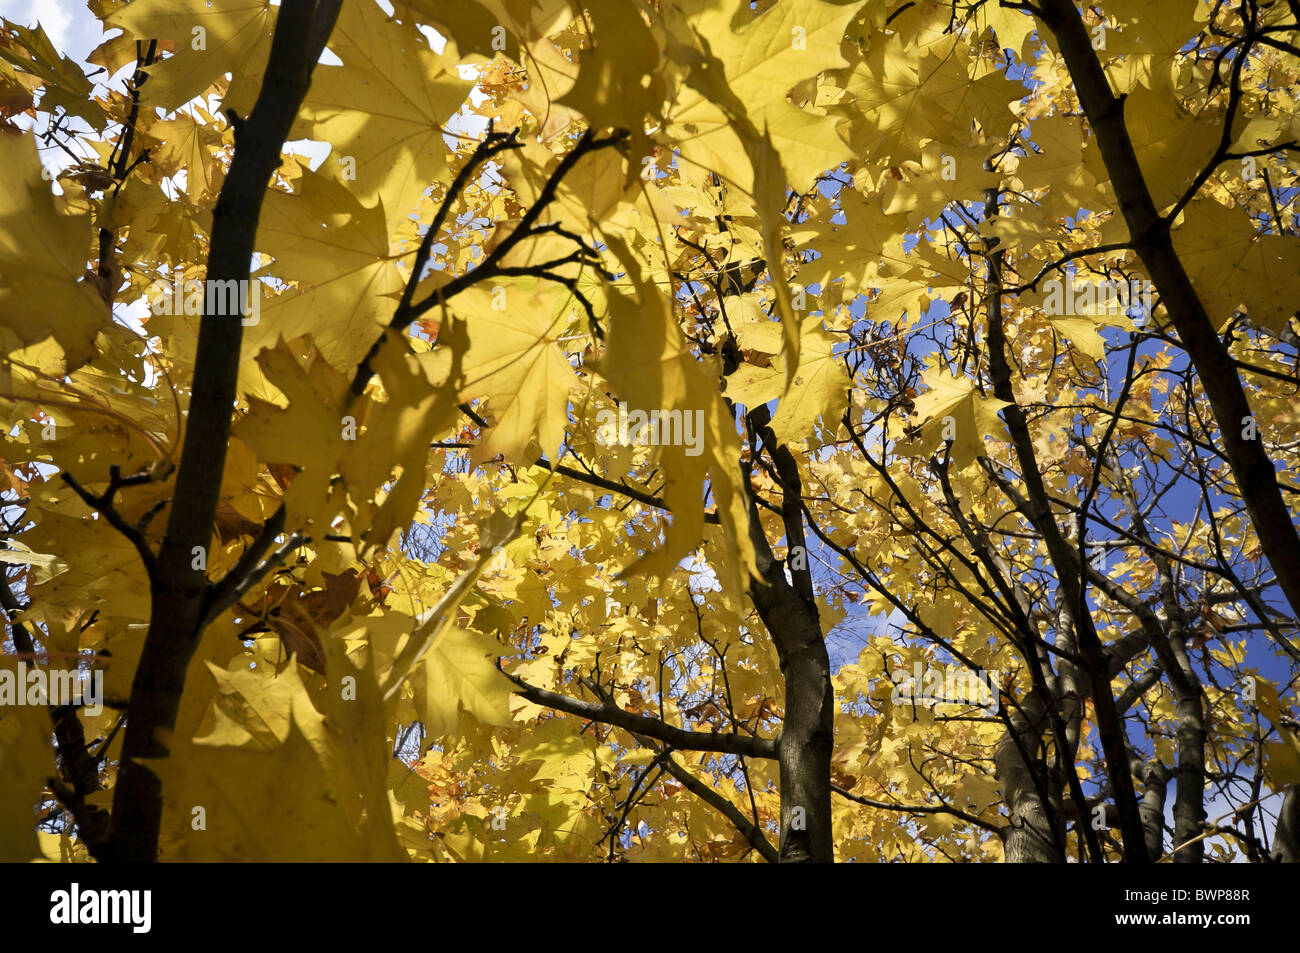 Norway Maple Acer platanoides arbre en automne Banque D'Images